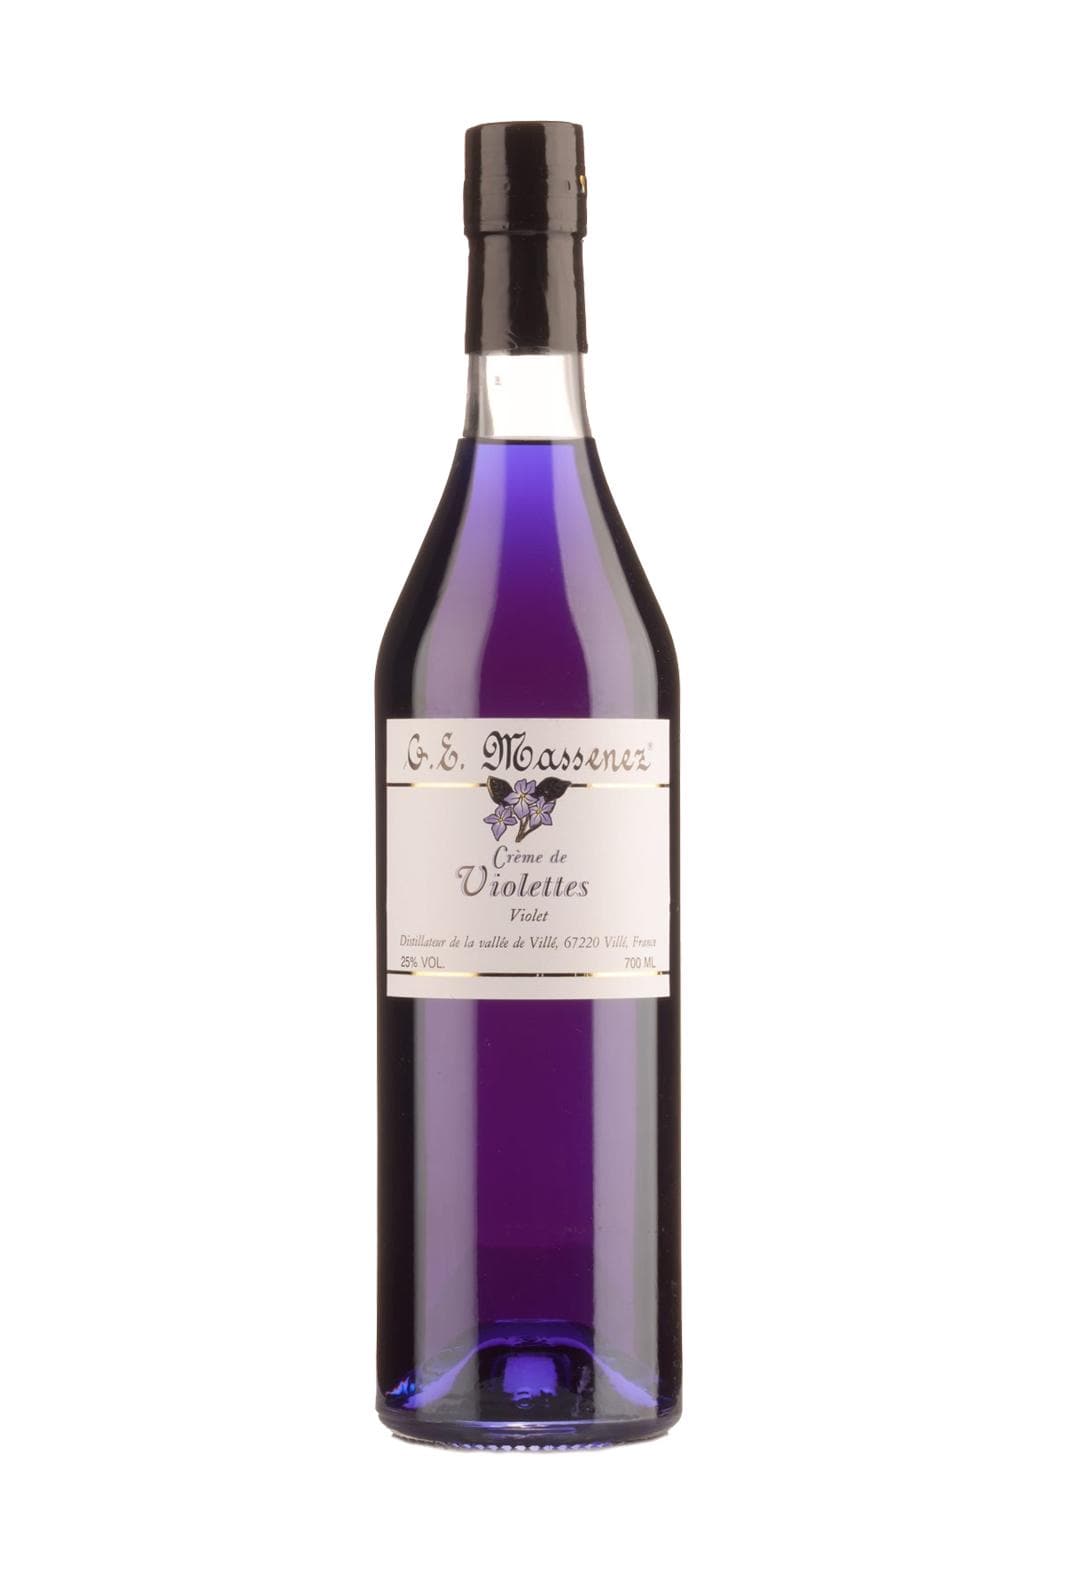 Massenez Liqueur de Violette (Violet) 25% 700ml | Liqueurs | Shop online at Spirits of France